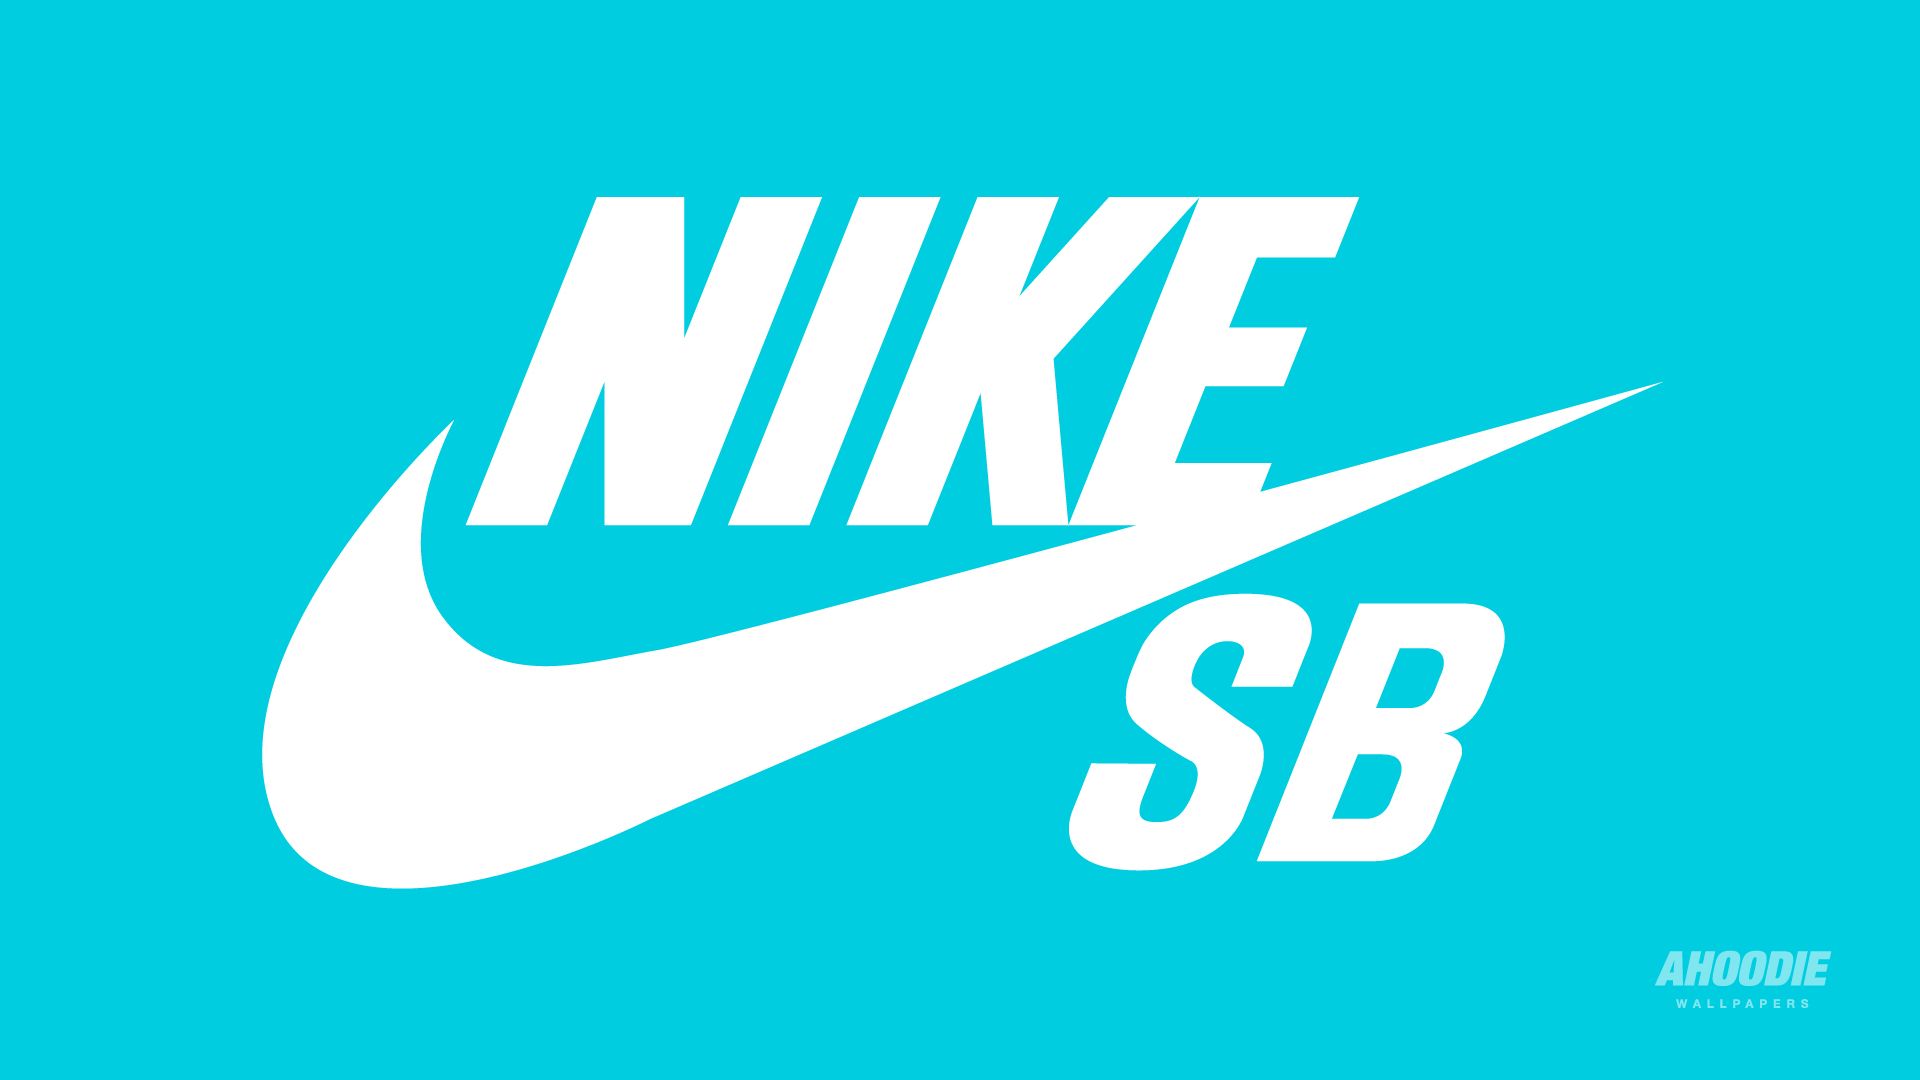 Nike and Nike SB desktop wallpapers | AHOODIE - Brand wallpapers